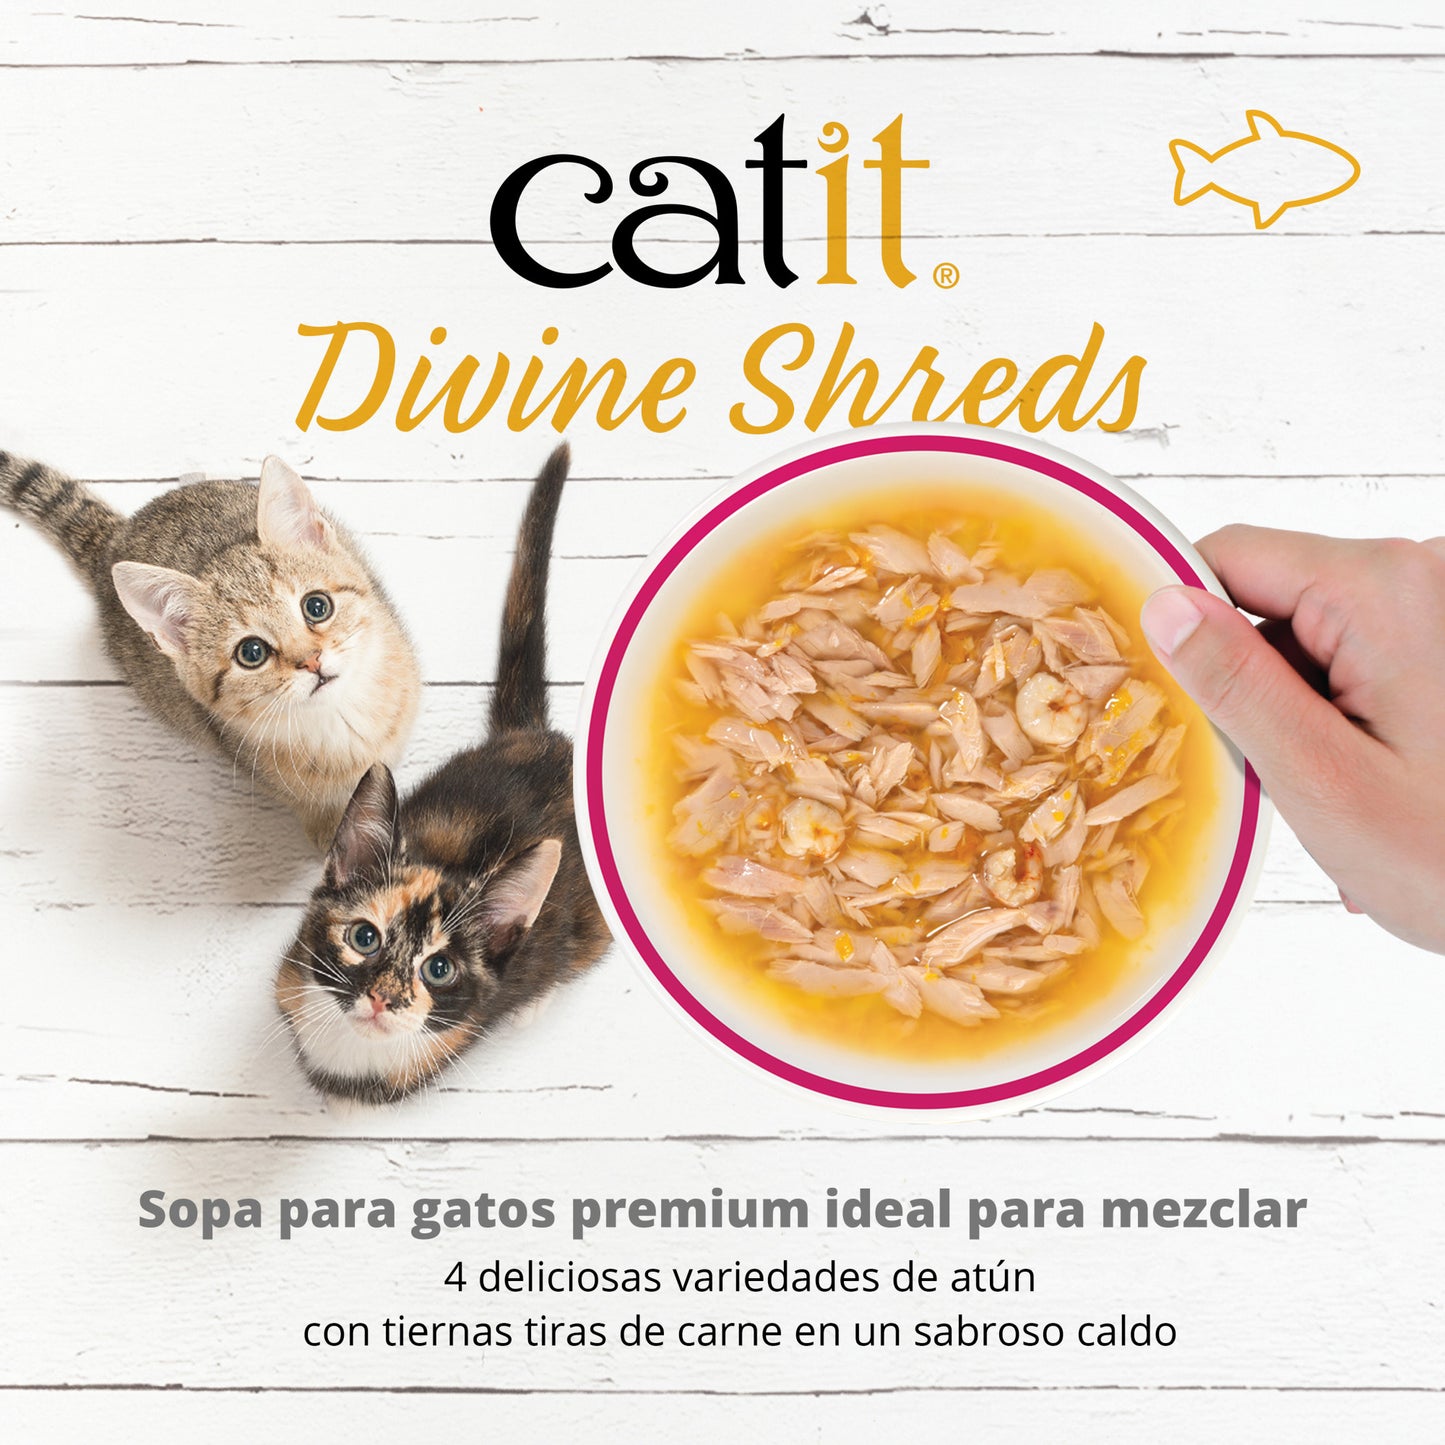 Sopa para Gatos Catit Divine Shreds - Multipack 12 unidades